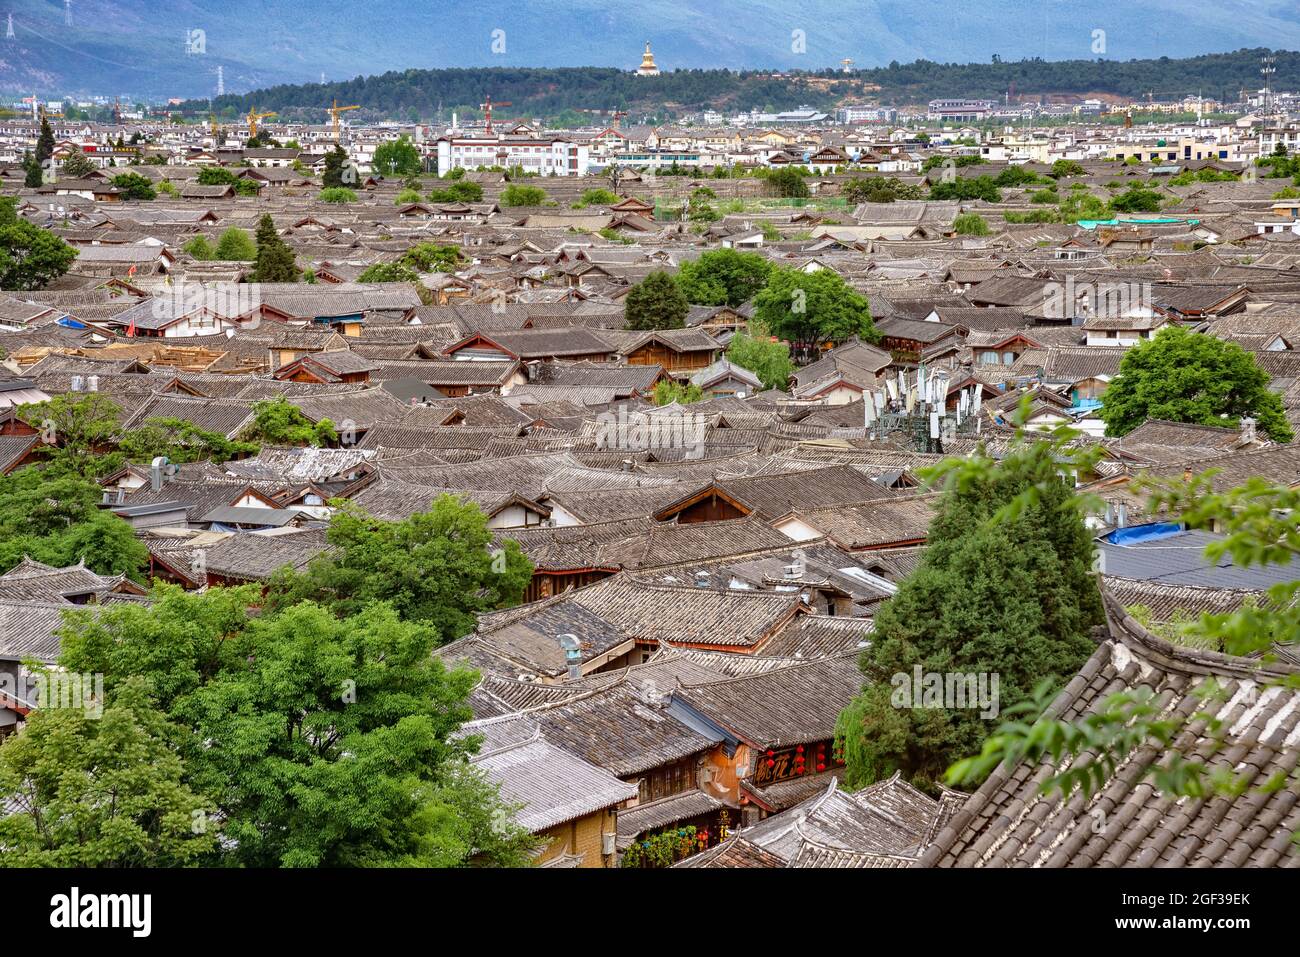 Les toits traditionnels de la vieille ville de Lijiang, en Chine. Dayan, communément appelé la vieille ville de Lijiang est le centre historique de la ville de Lijiang Banque D'Images